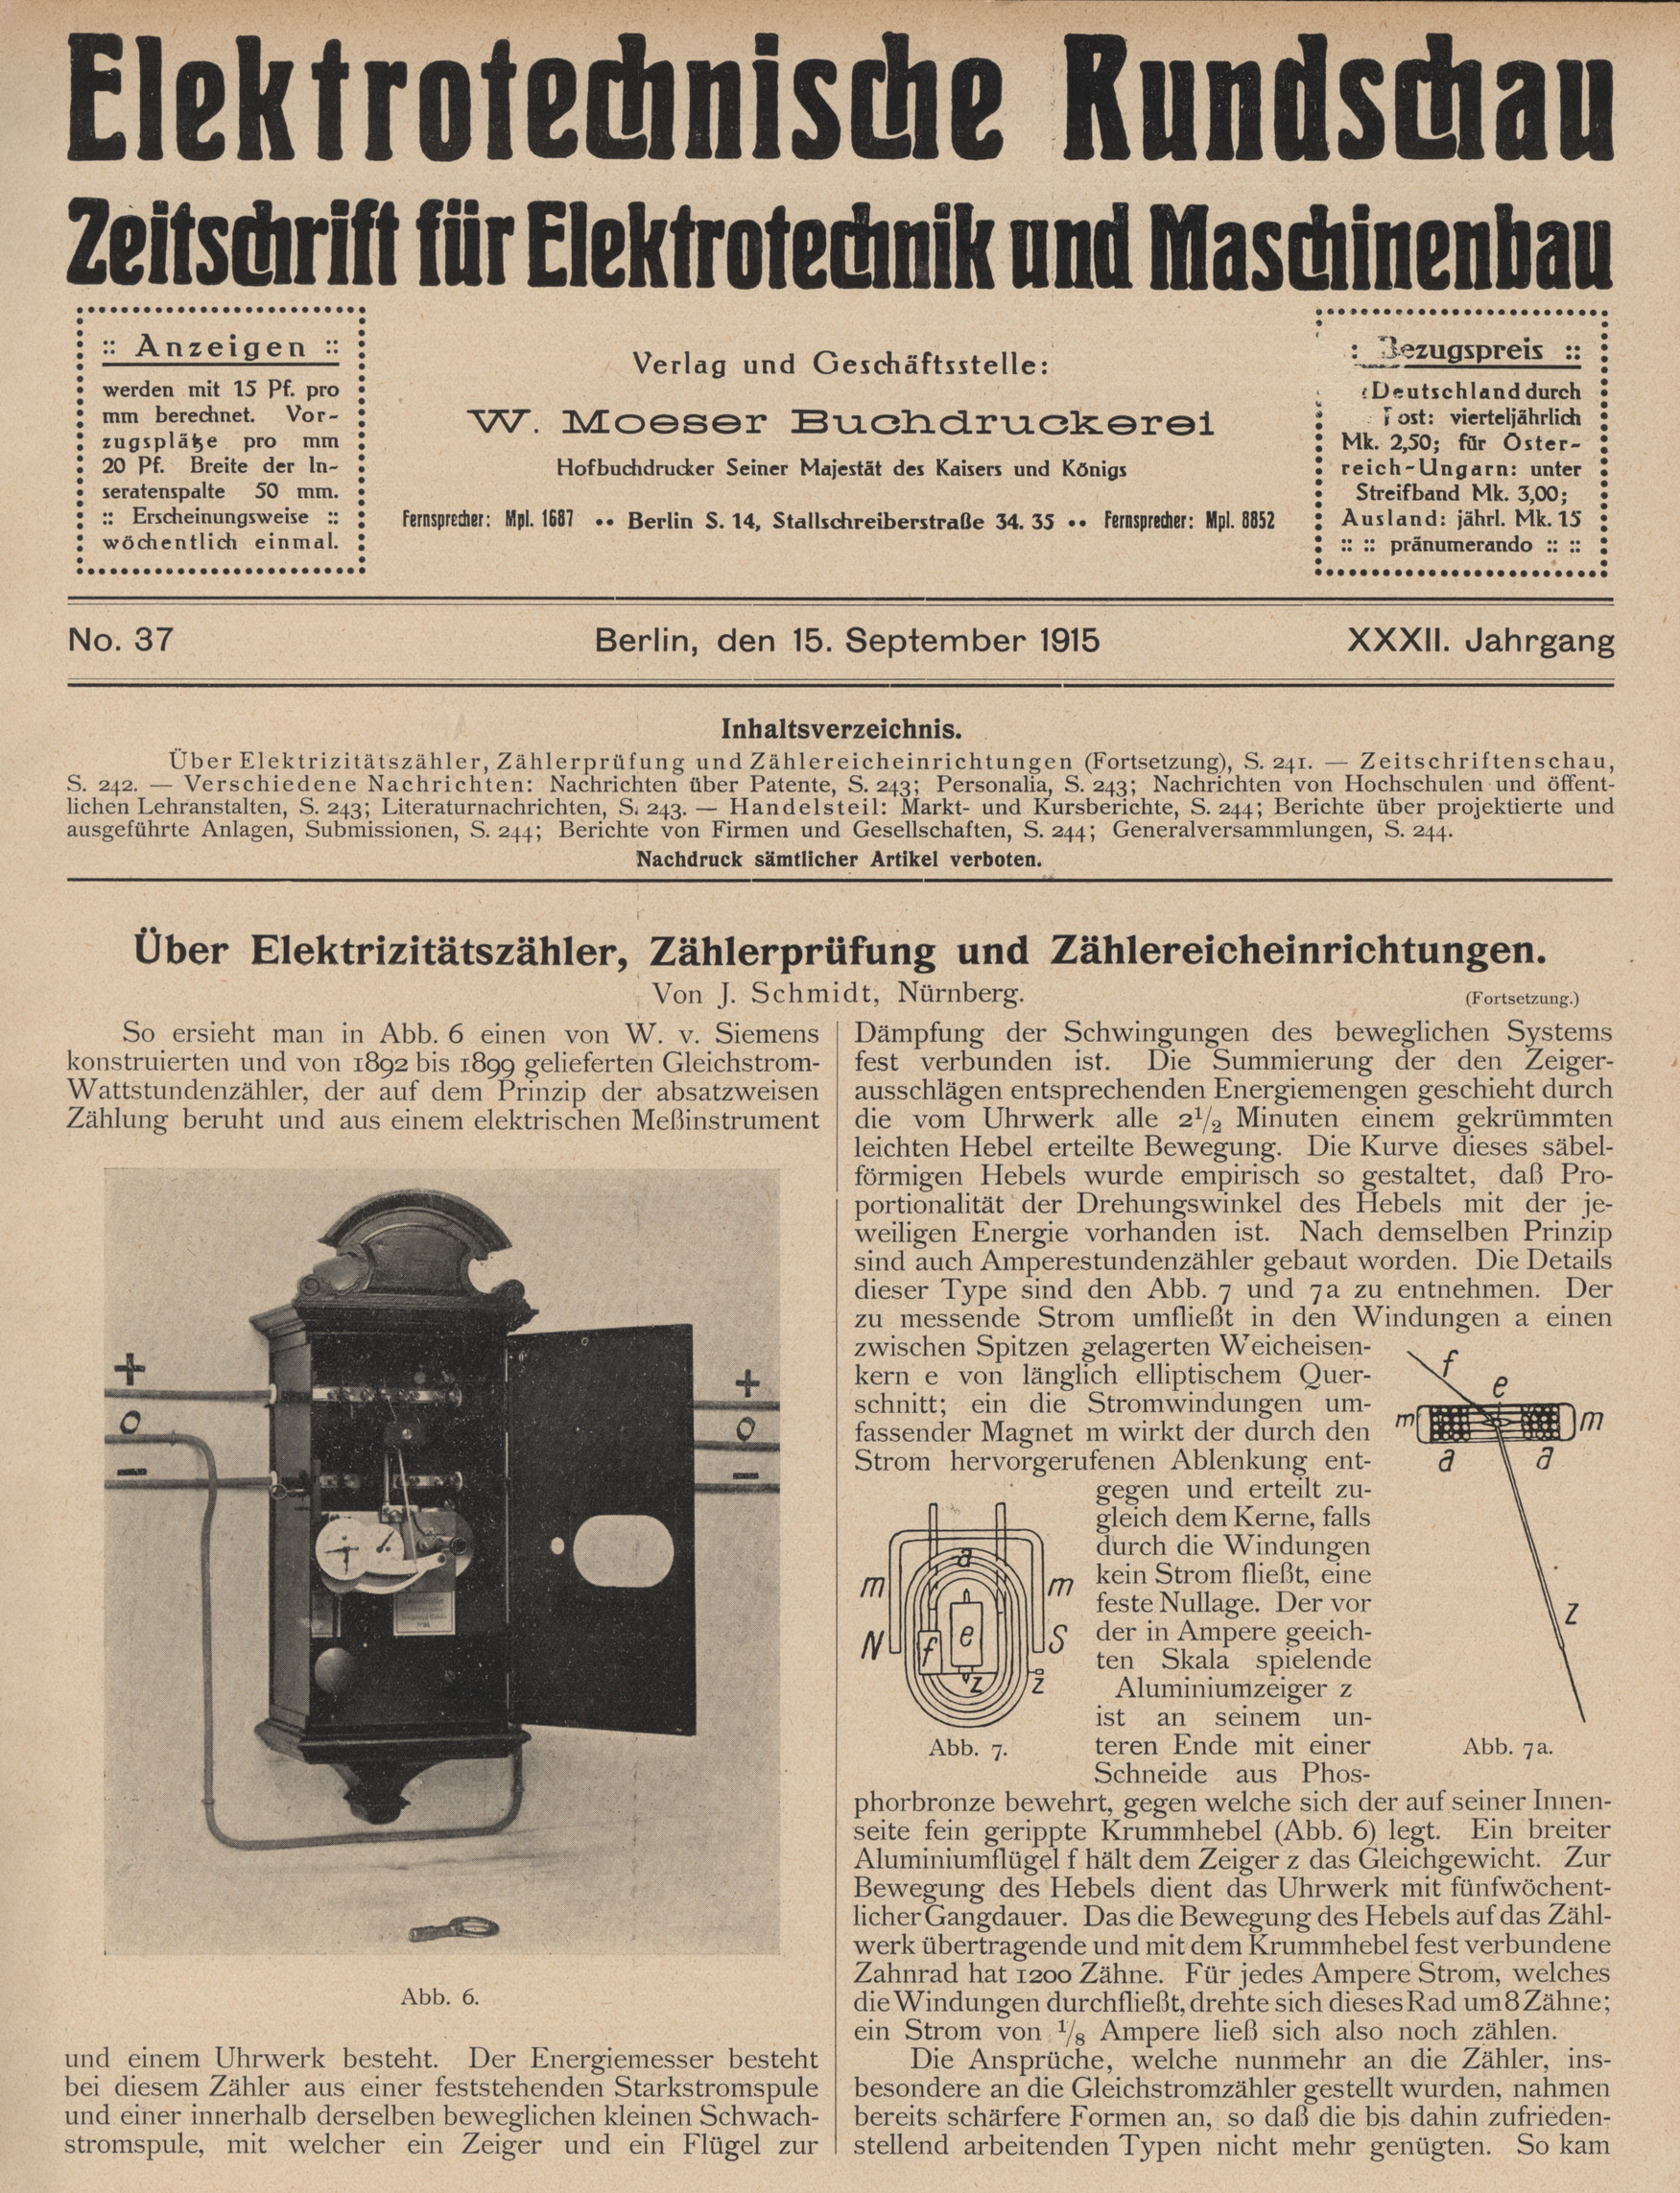 Elektrotechnische Rundschau : Zeitschrift für Elektrotechnik und Maschinenbau + Polytechnische Rundschau, No. 37, XXXII. Jahrgang